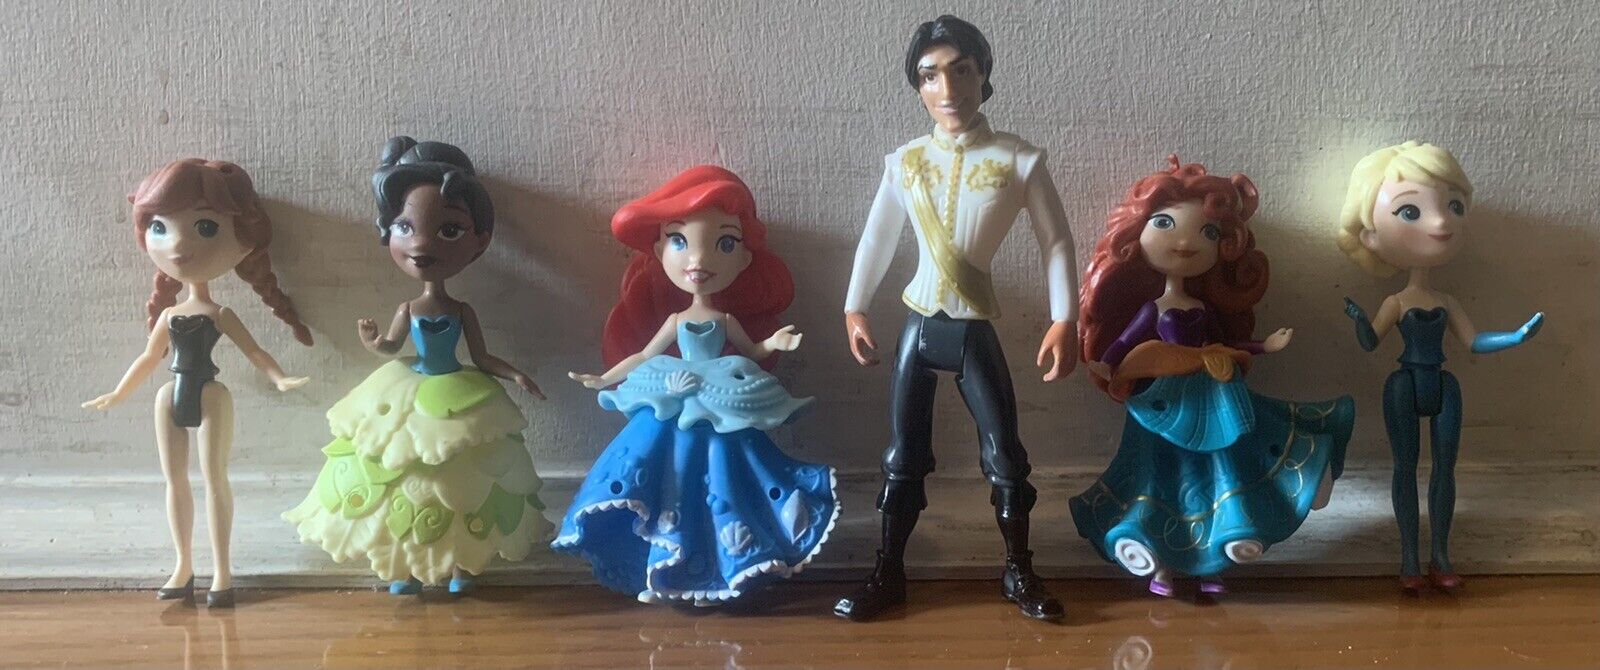 Lot of 6 Disney Princess Little Kingdom Mini Doll MIX LOT’ Figures.